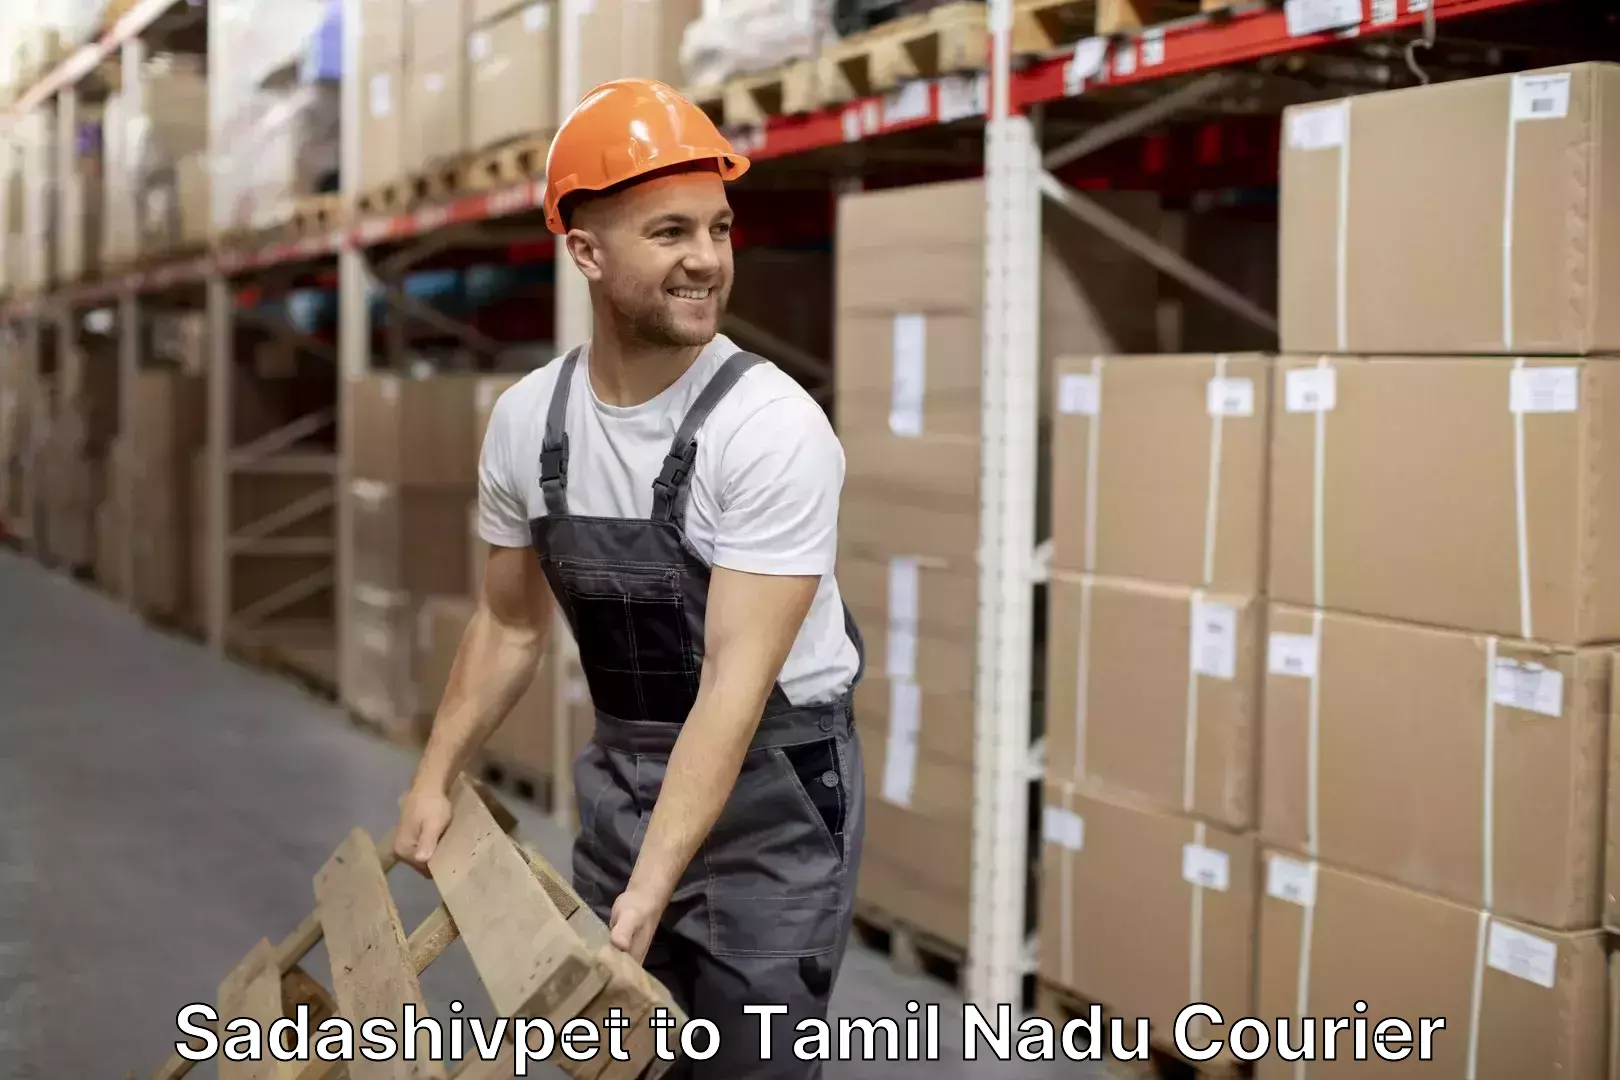 Furniture handling services Sadashivpet to Tamil Nadu